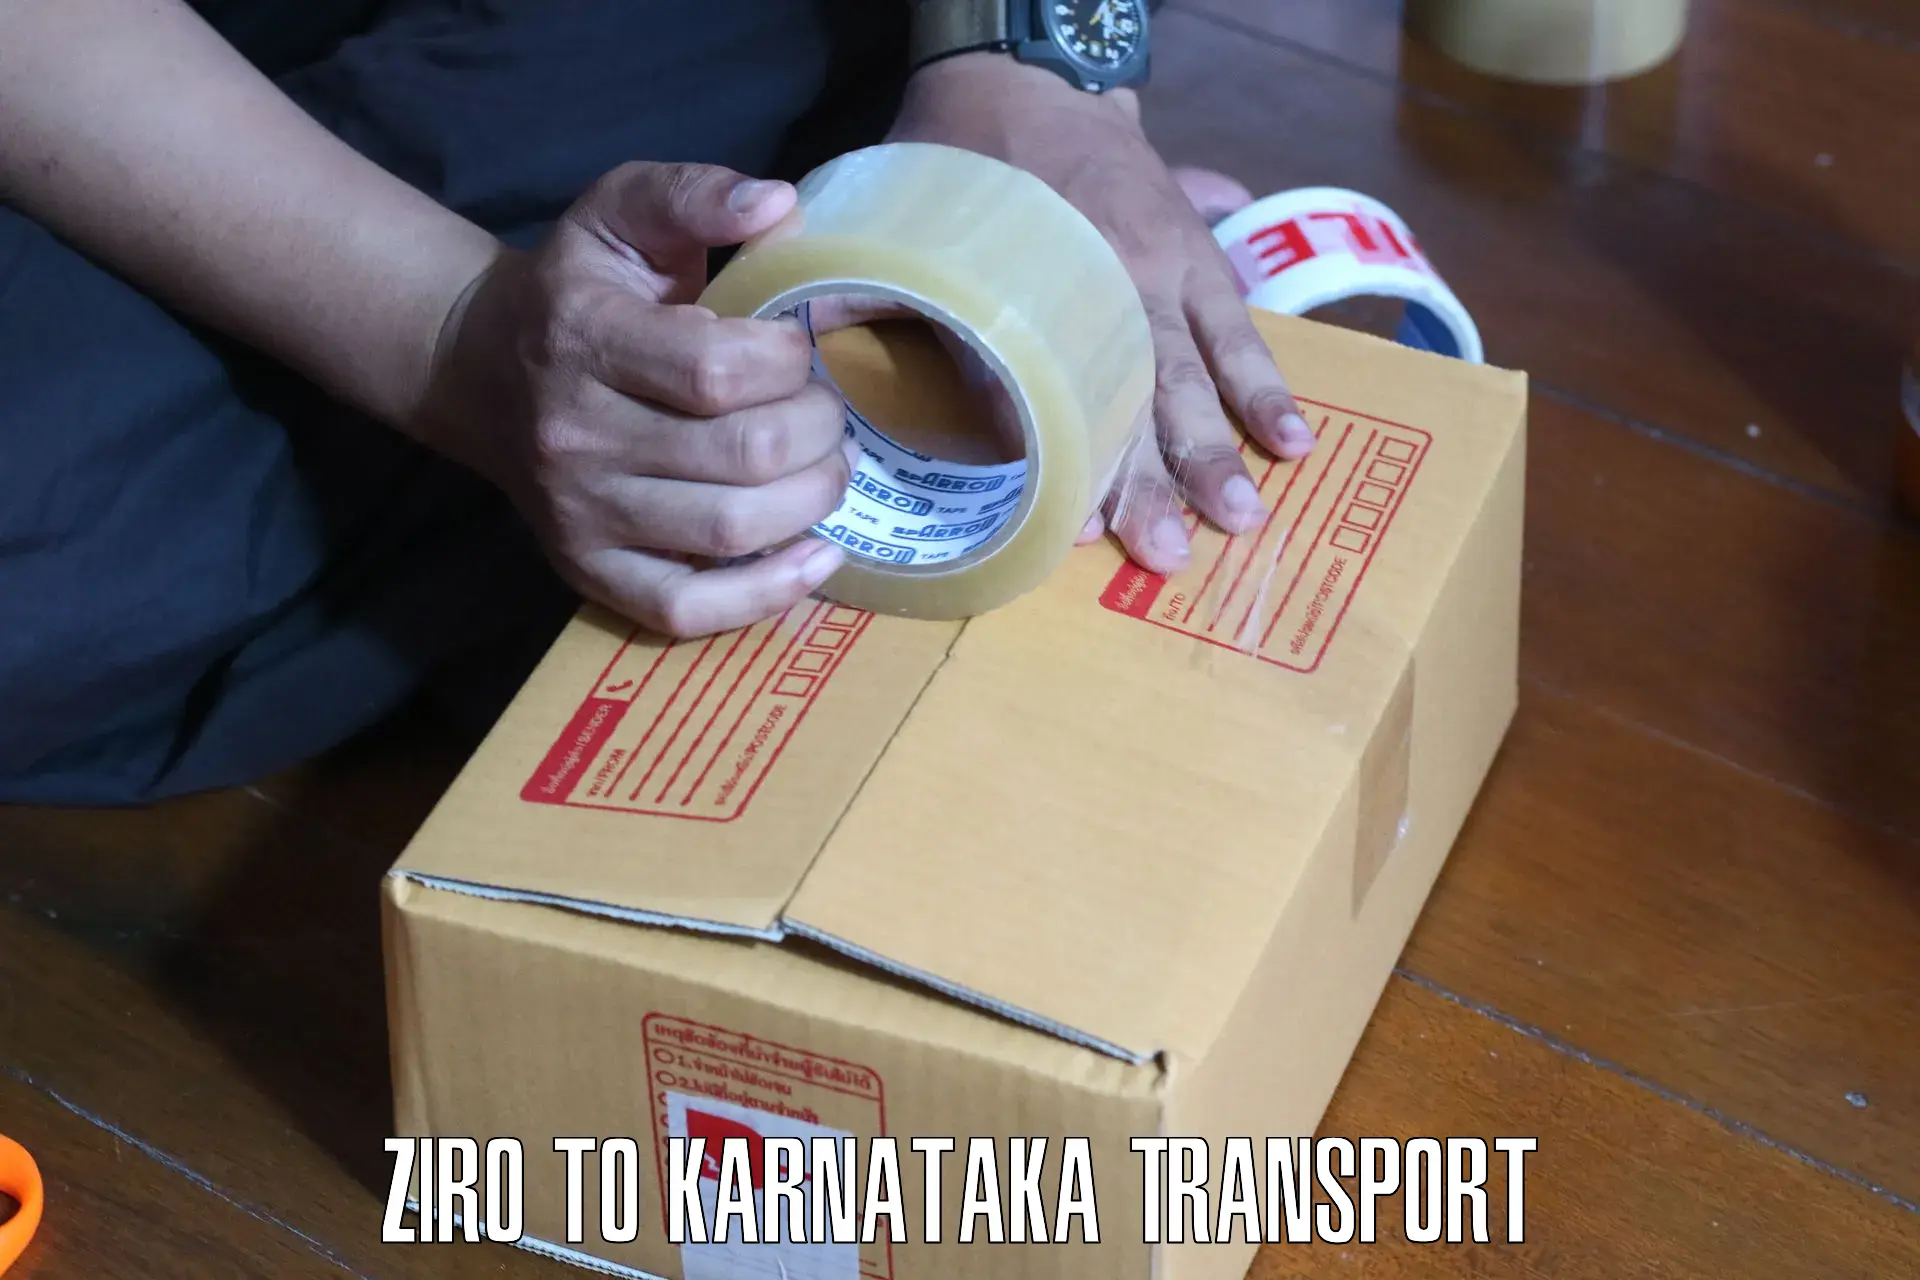 Shipping partner Ziro to Honnavar